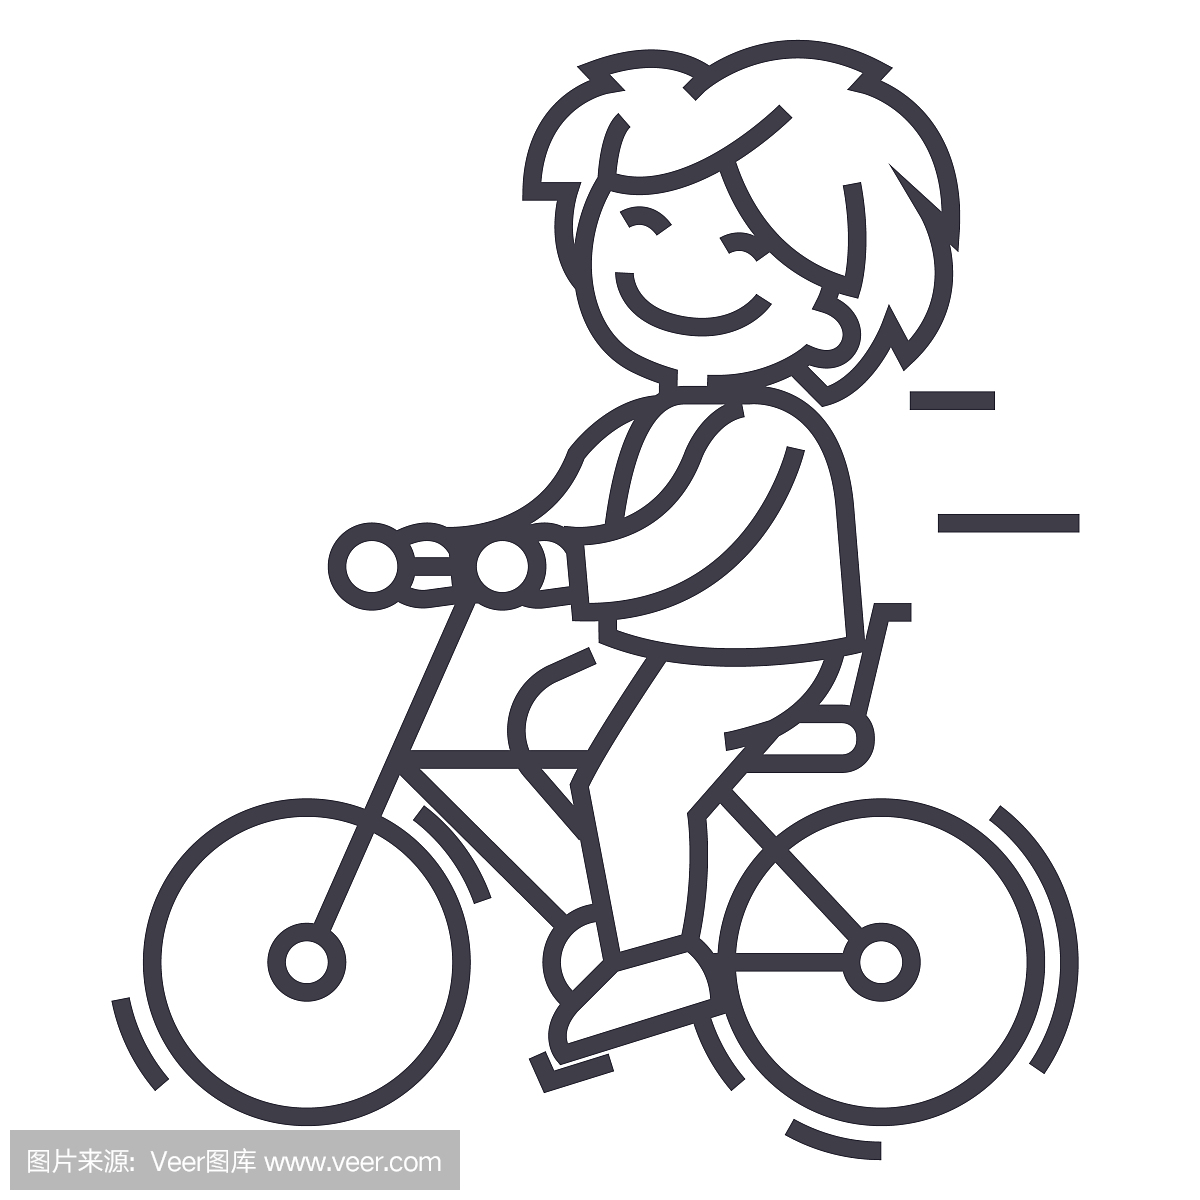 少儿8一12岁儿童画 好看简笔画自行车的画法图解教程 咿咿呀呀儿童手工网